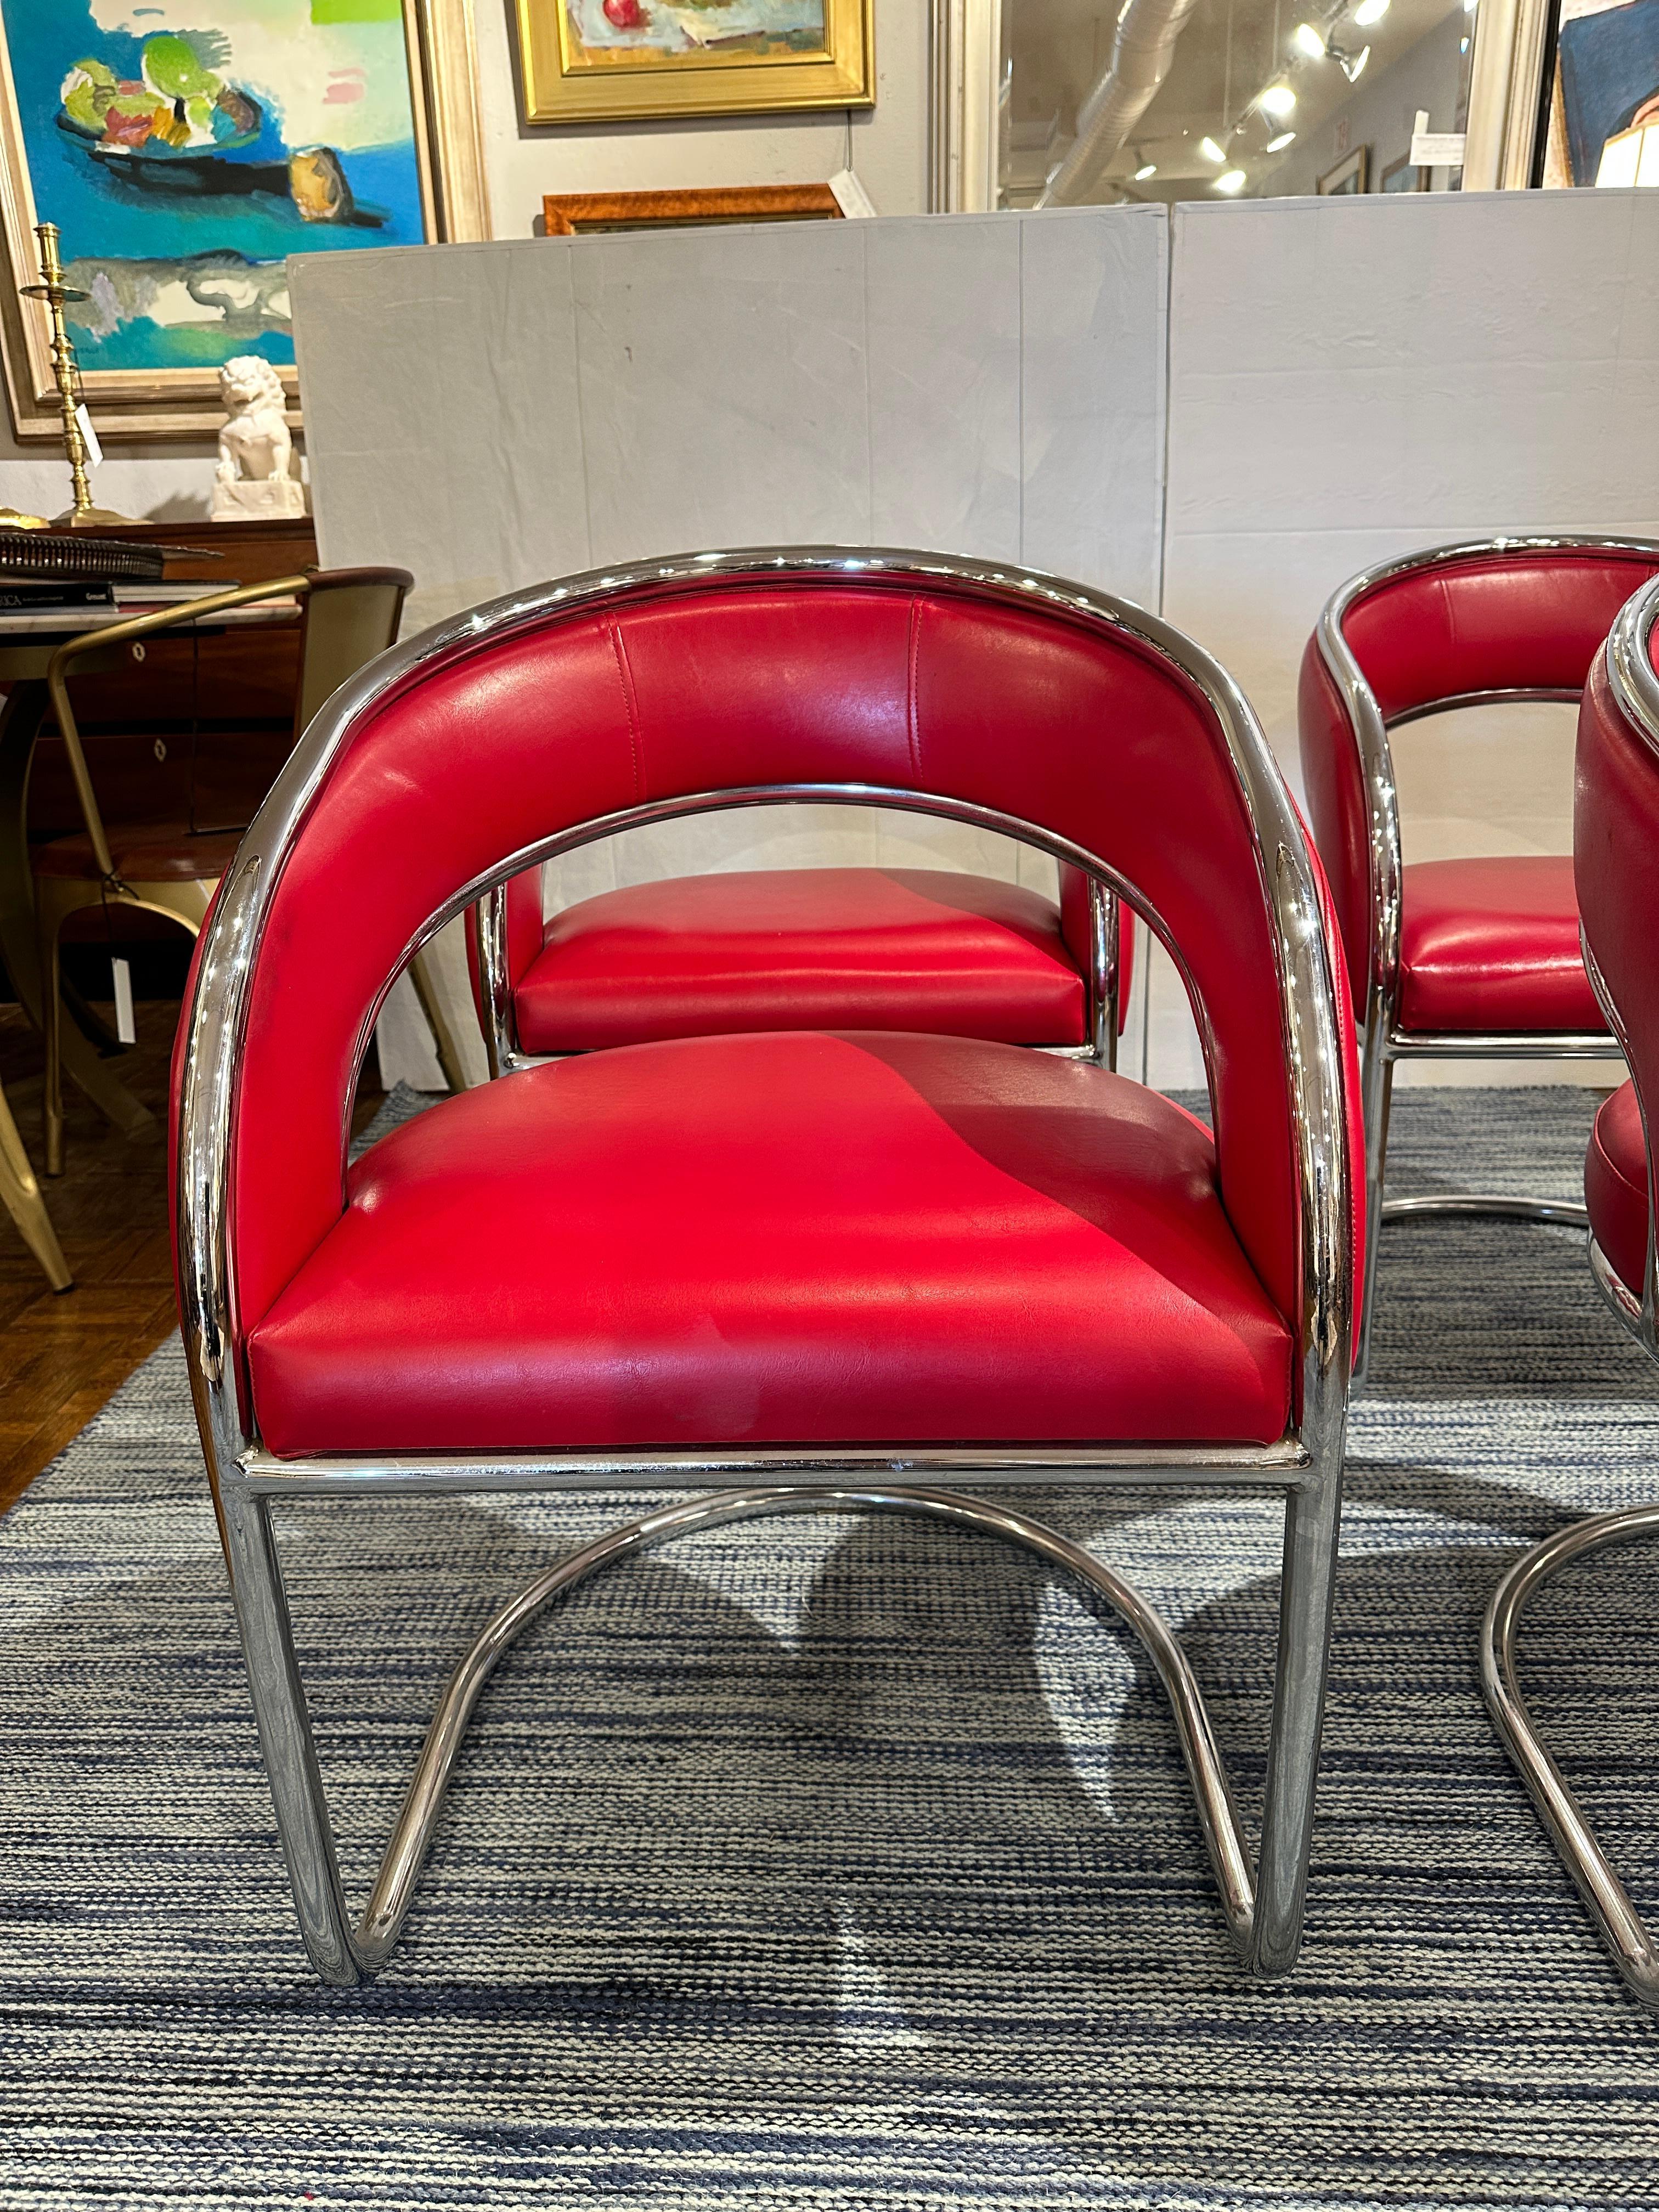 Ensemble de 4.  Chaises modernes du milieu du siècle dernier datant des années 1960.  Rembourré en rouge vif et joyeux  en cuir, encadré de chrome brillant.  Très confortables comme chaises longues ou chaises de table de jeu.  En très bon état.